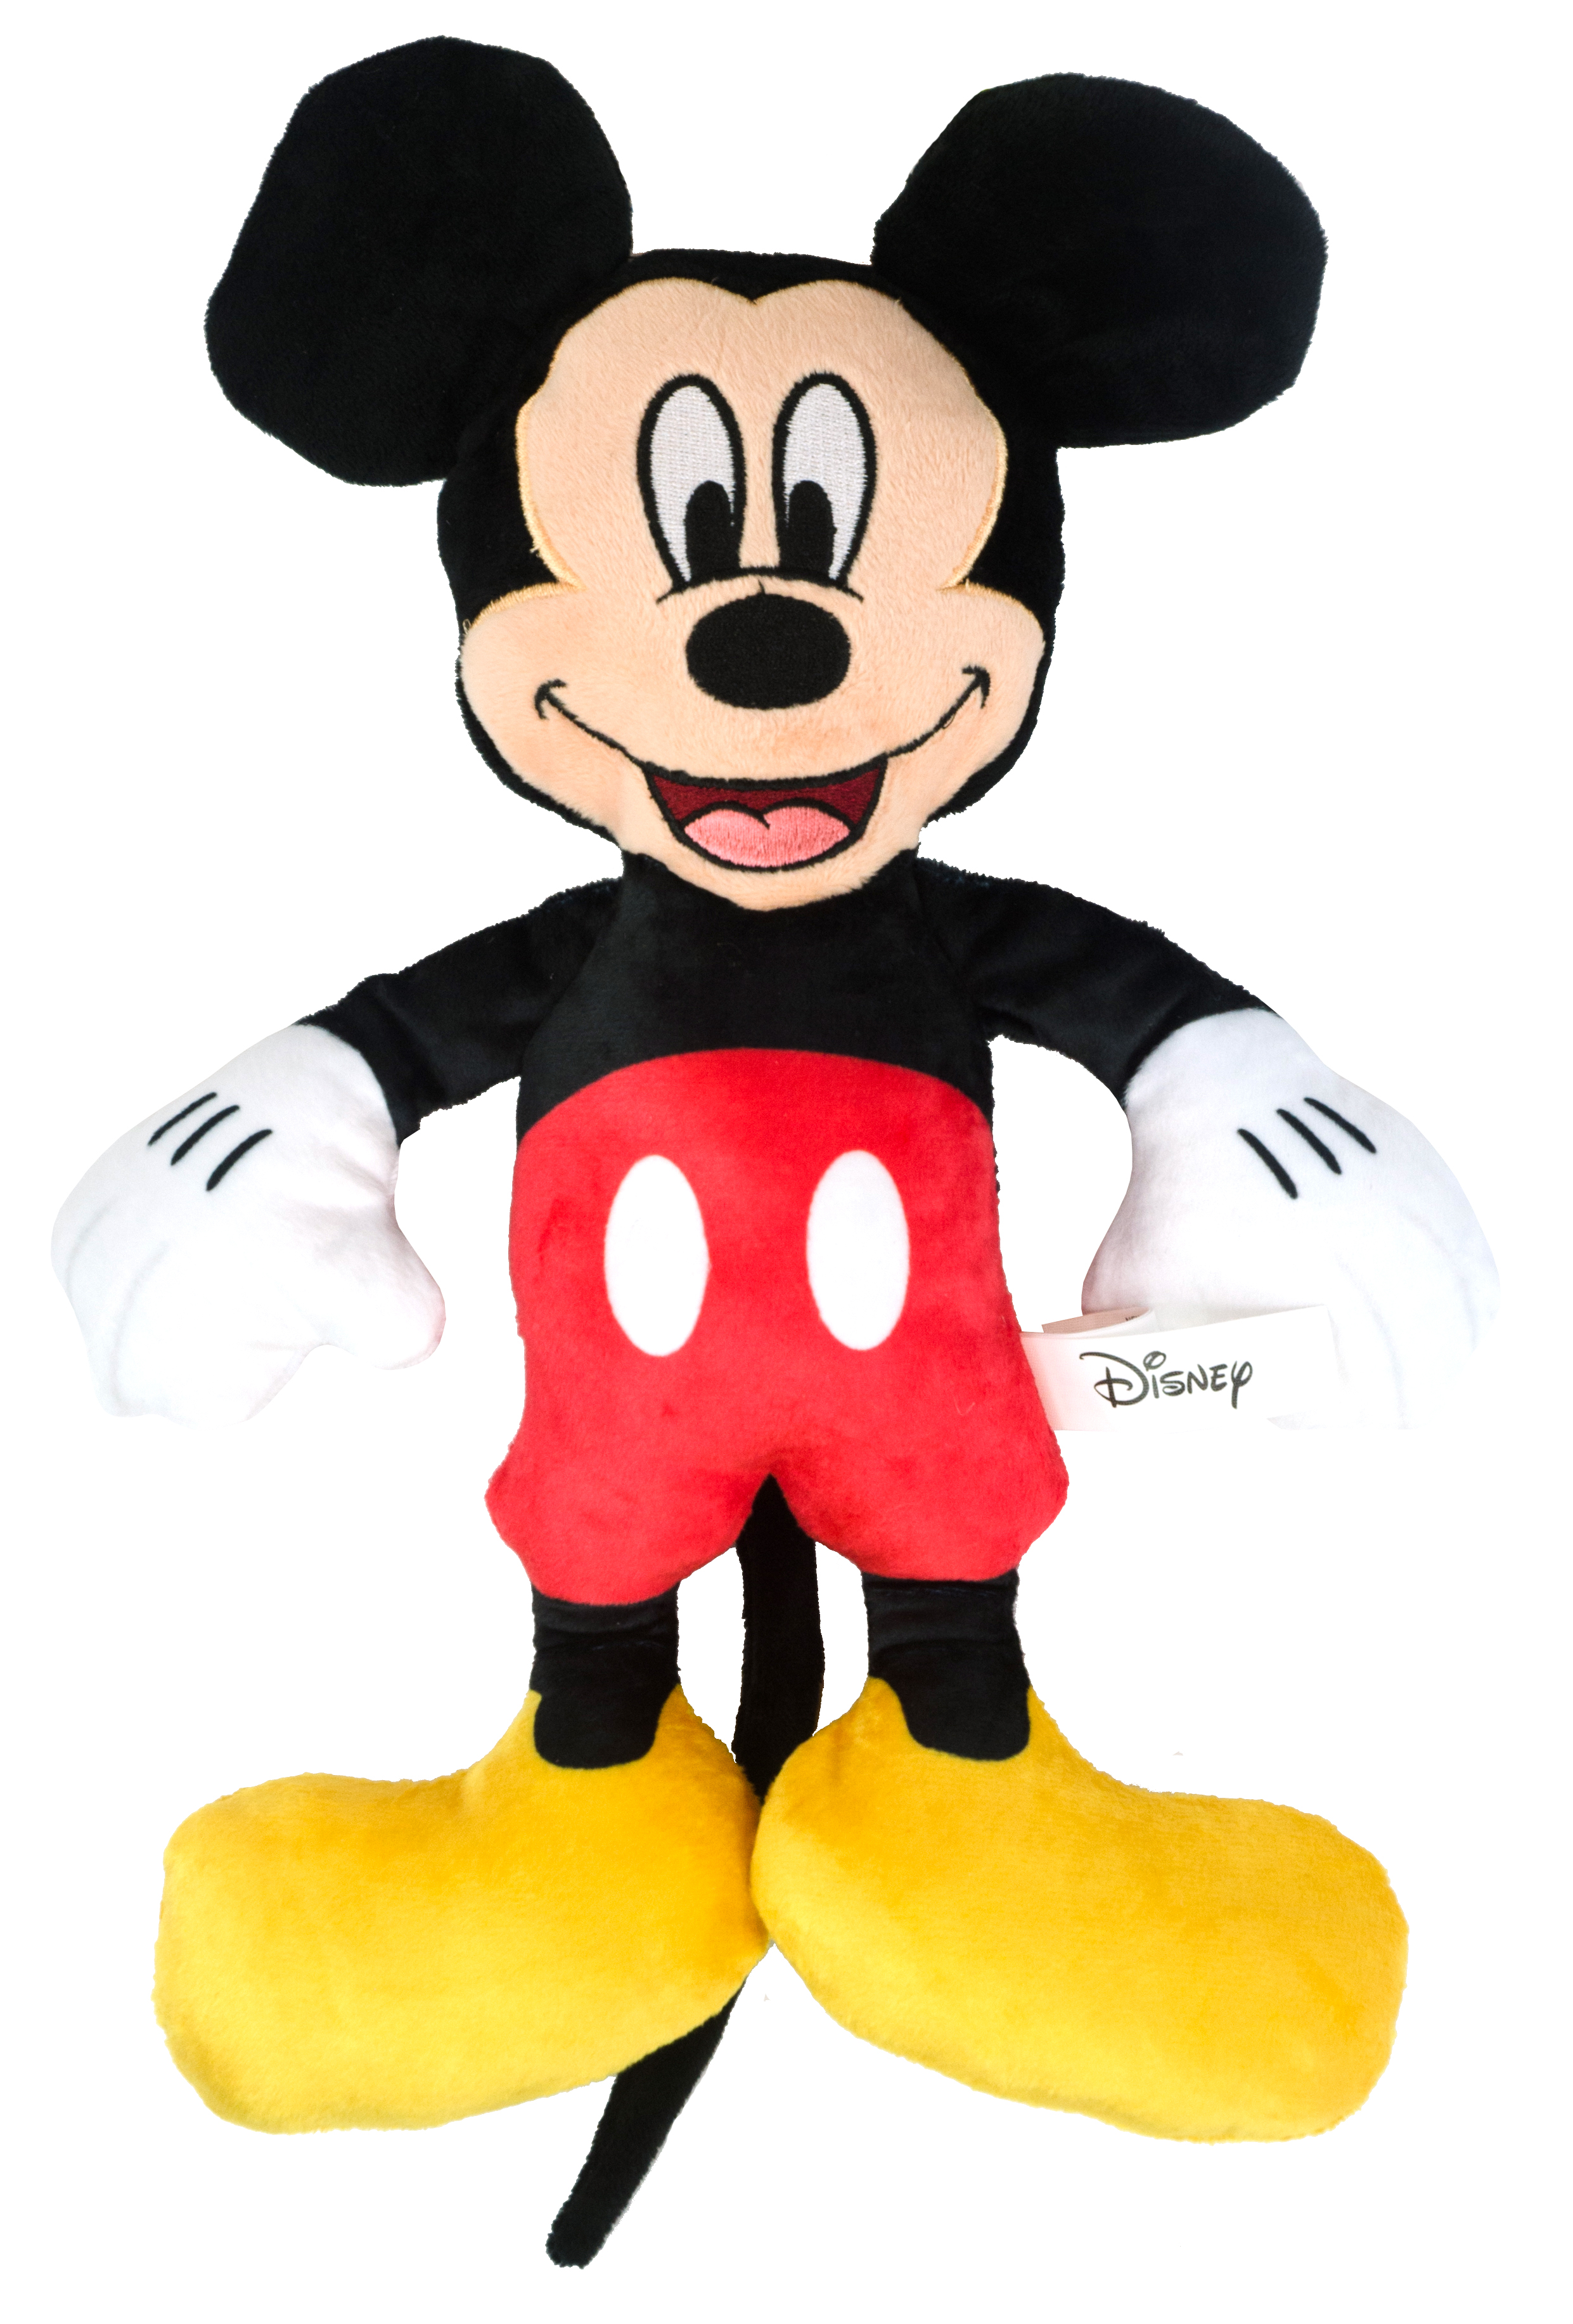 Disney Plush Toy - Mickey Mouse